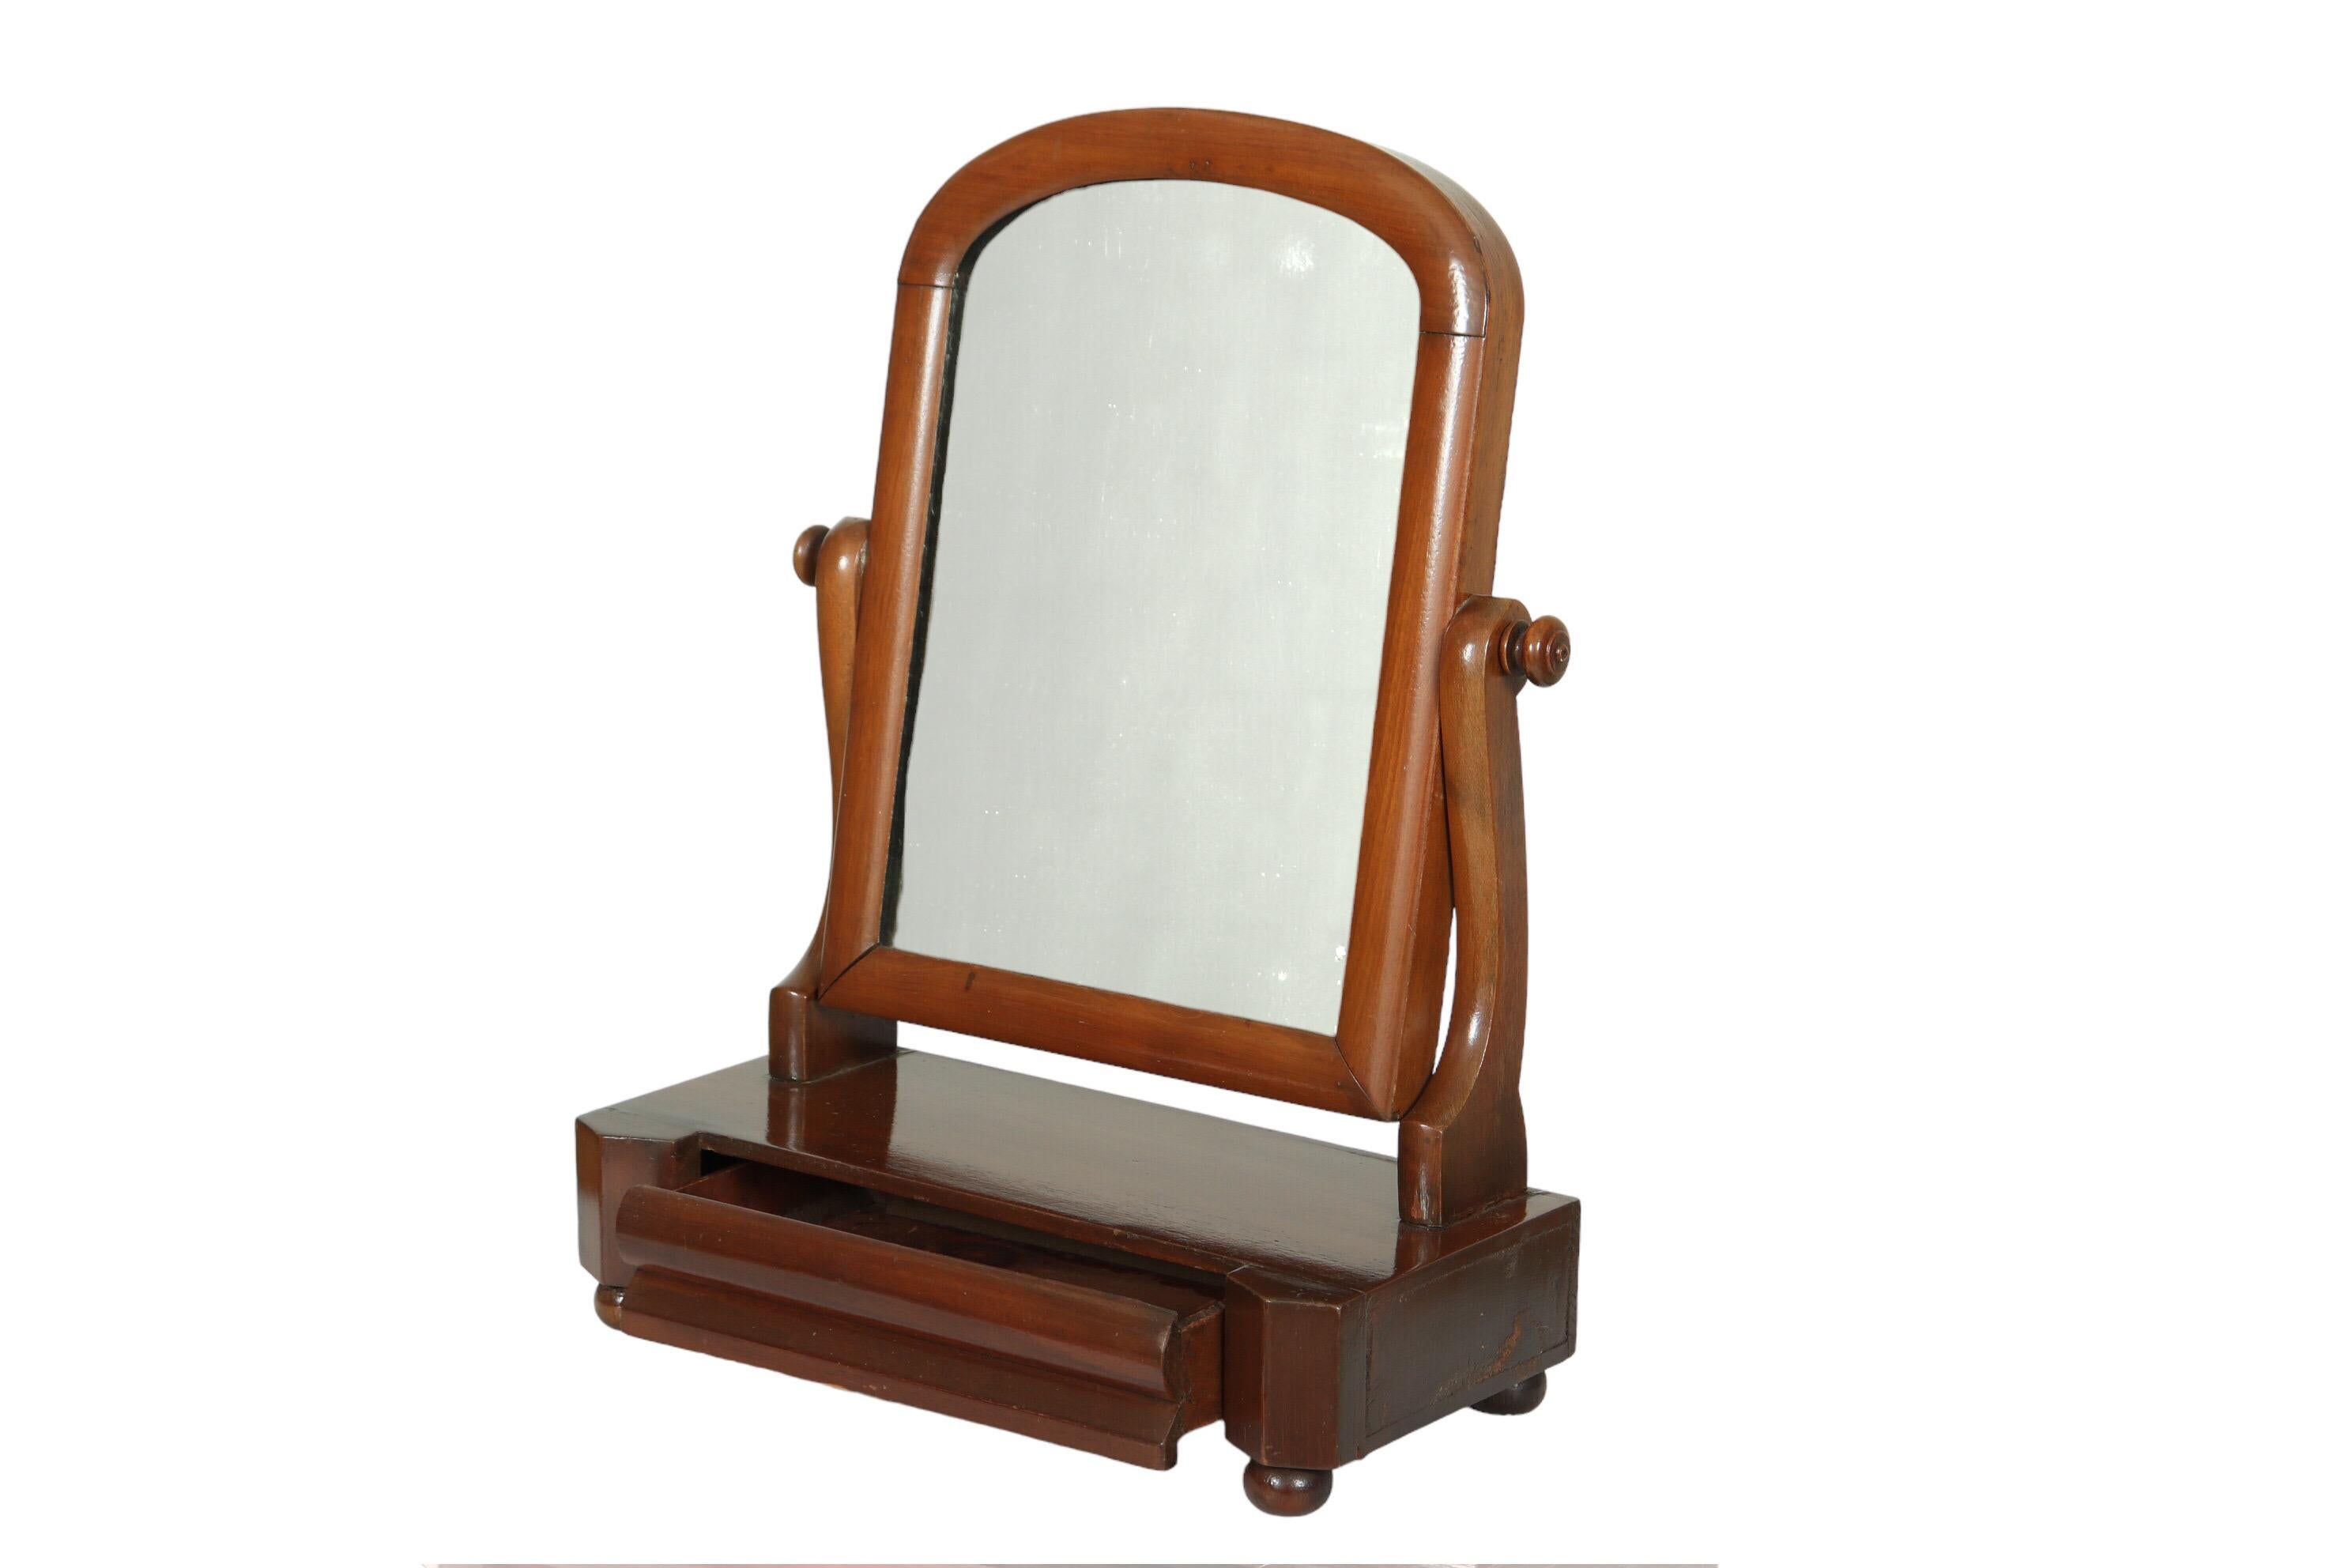 Ein Art-Deco-Tischspiegel mit einer einzigen Schublade. Ein bogenförmiger Spiegel auf gebogenen Stützen kann nach vorne und hinten gekippt werden. Darunter befindet sich eine schwalbenschwanzförmige Schublade mit abgeschrägter Front, die zwischen